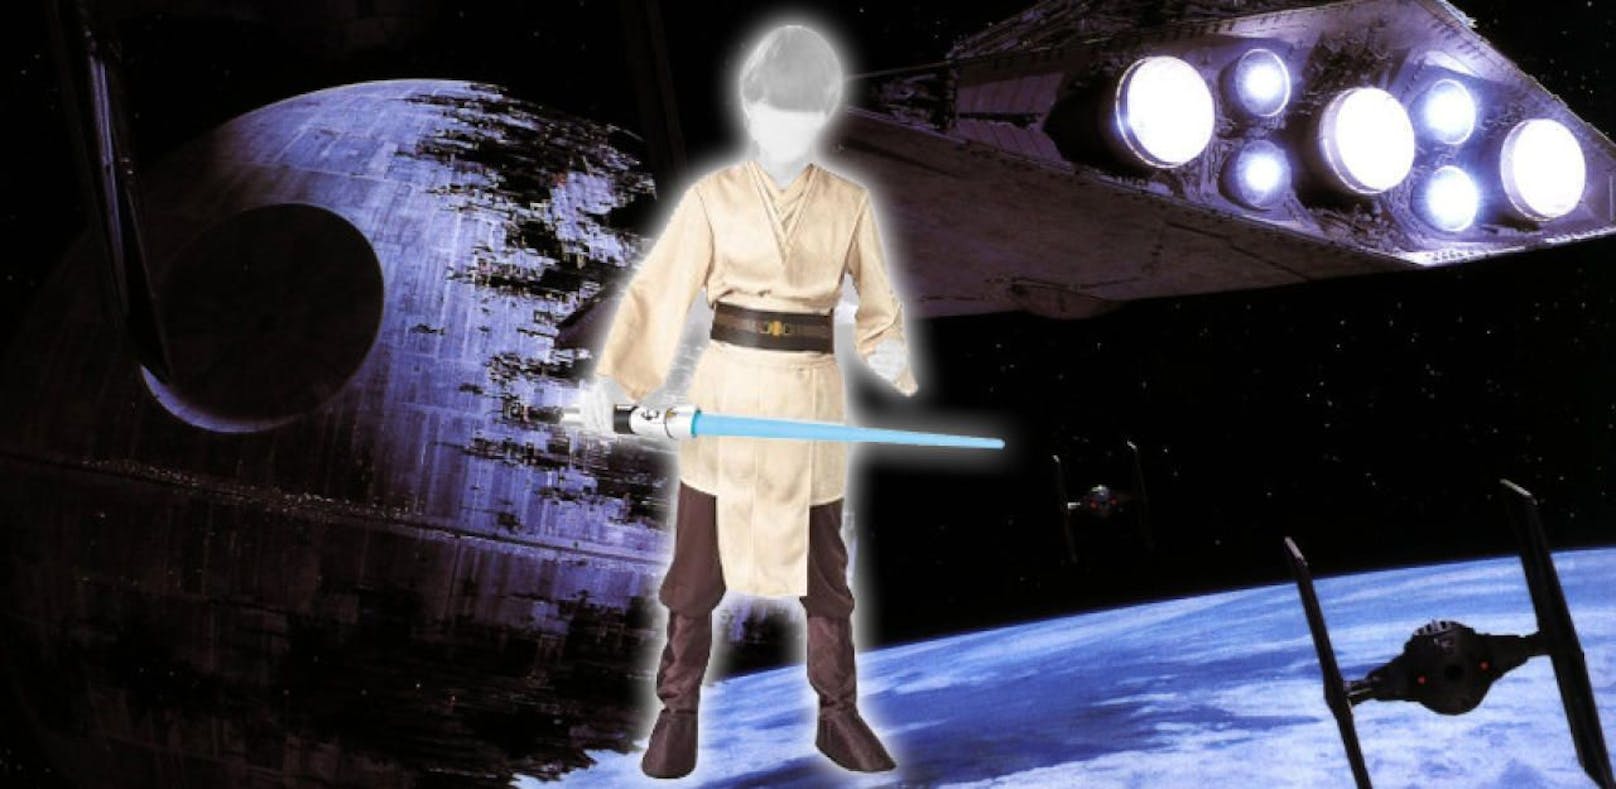 Ein Test der Arbeiterkammer ergab: Jedi-Kostüm für Kinder ist mit Giftstoffen belastet.